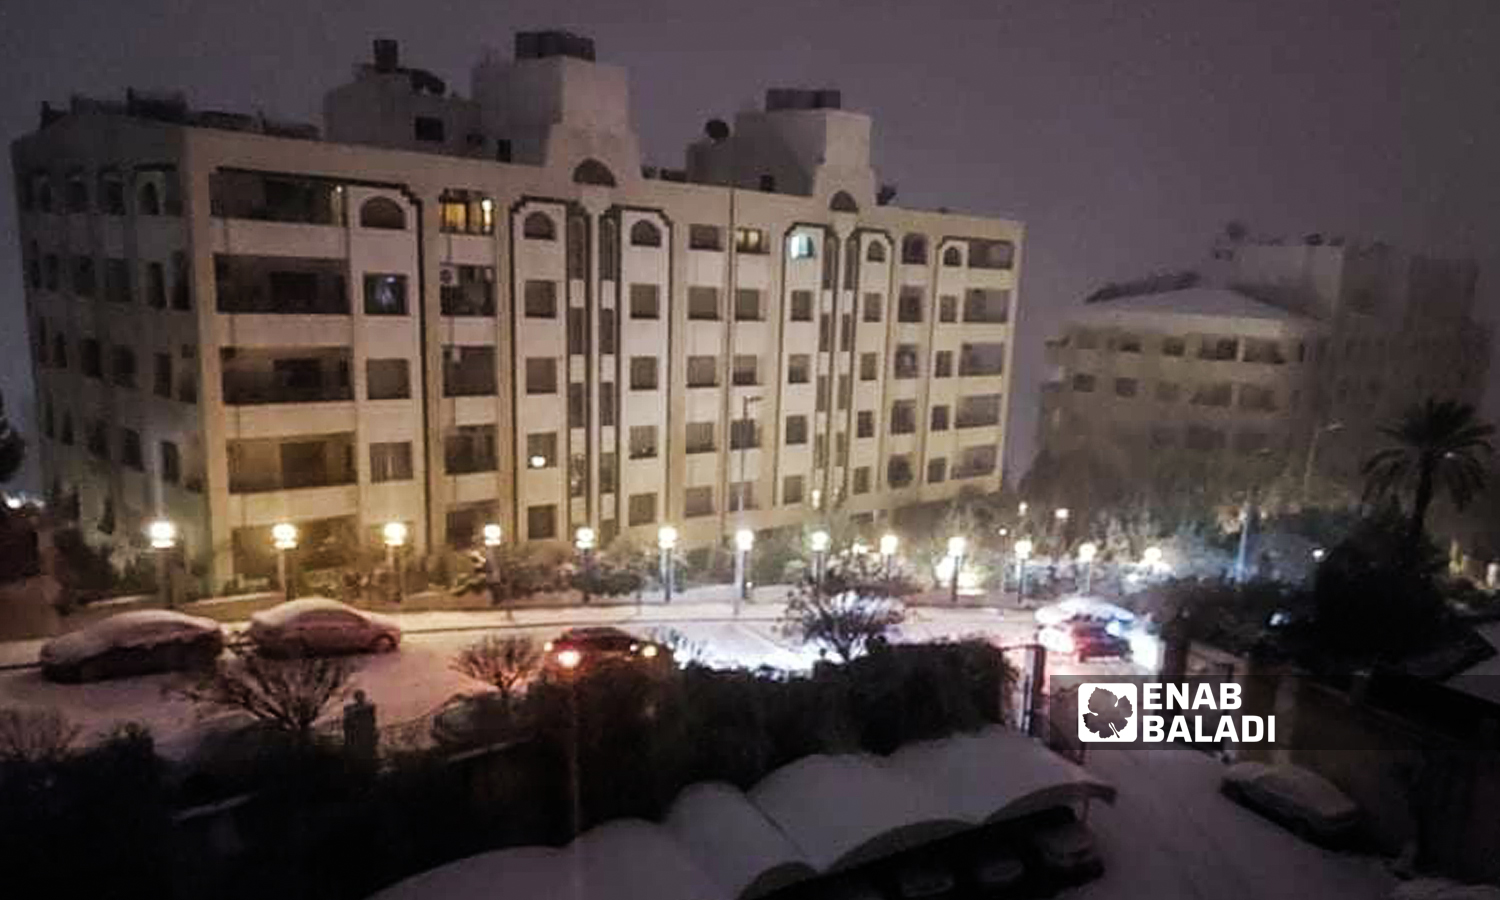 الثلوج المتساقطة في حي مشروع دمر في ظل انخفاض شديد بدرجات الحرارة في دمشق 19 كانون الثاني 2022 ( حسان حسان / عنب بلدي )